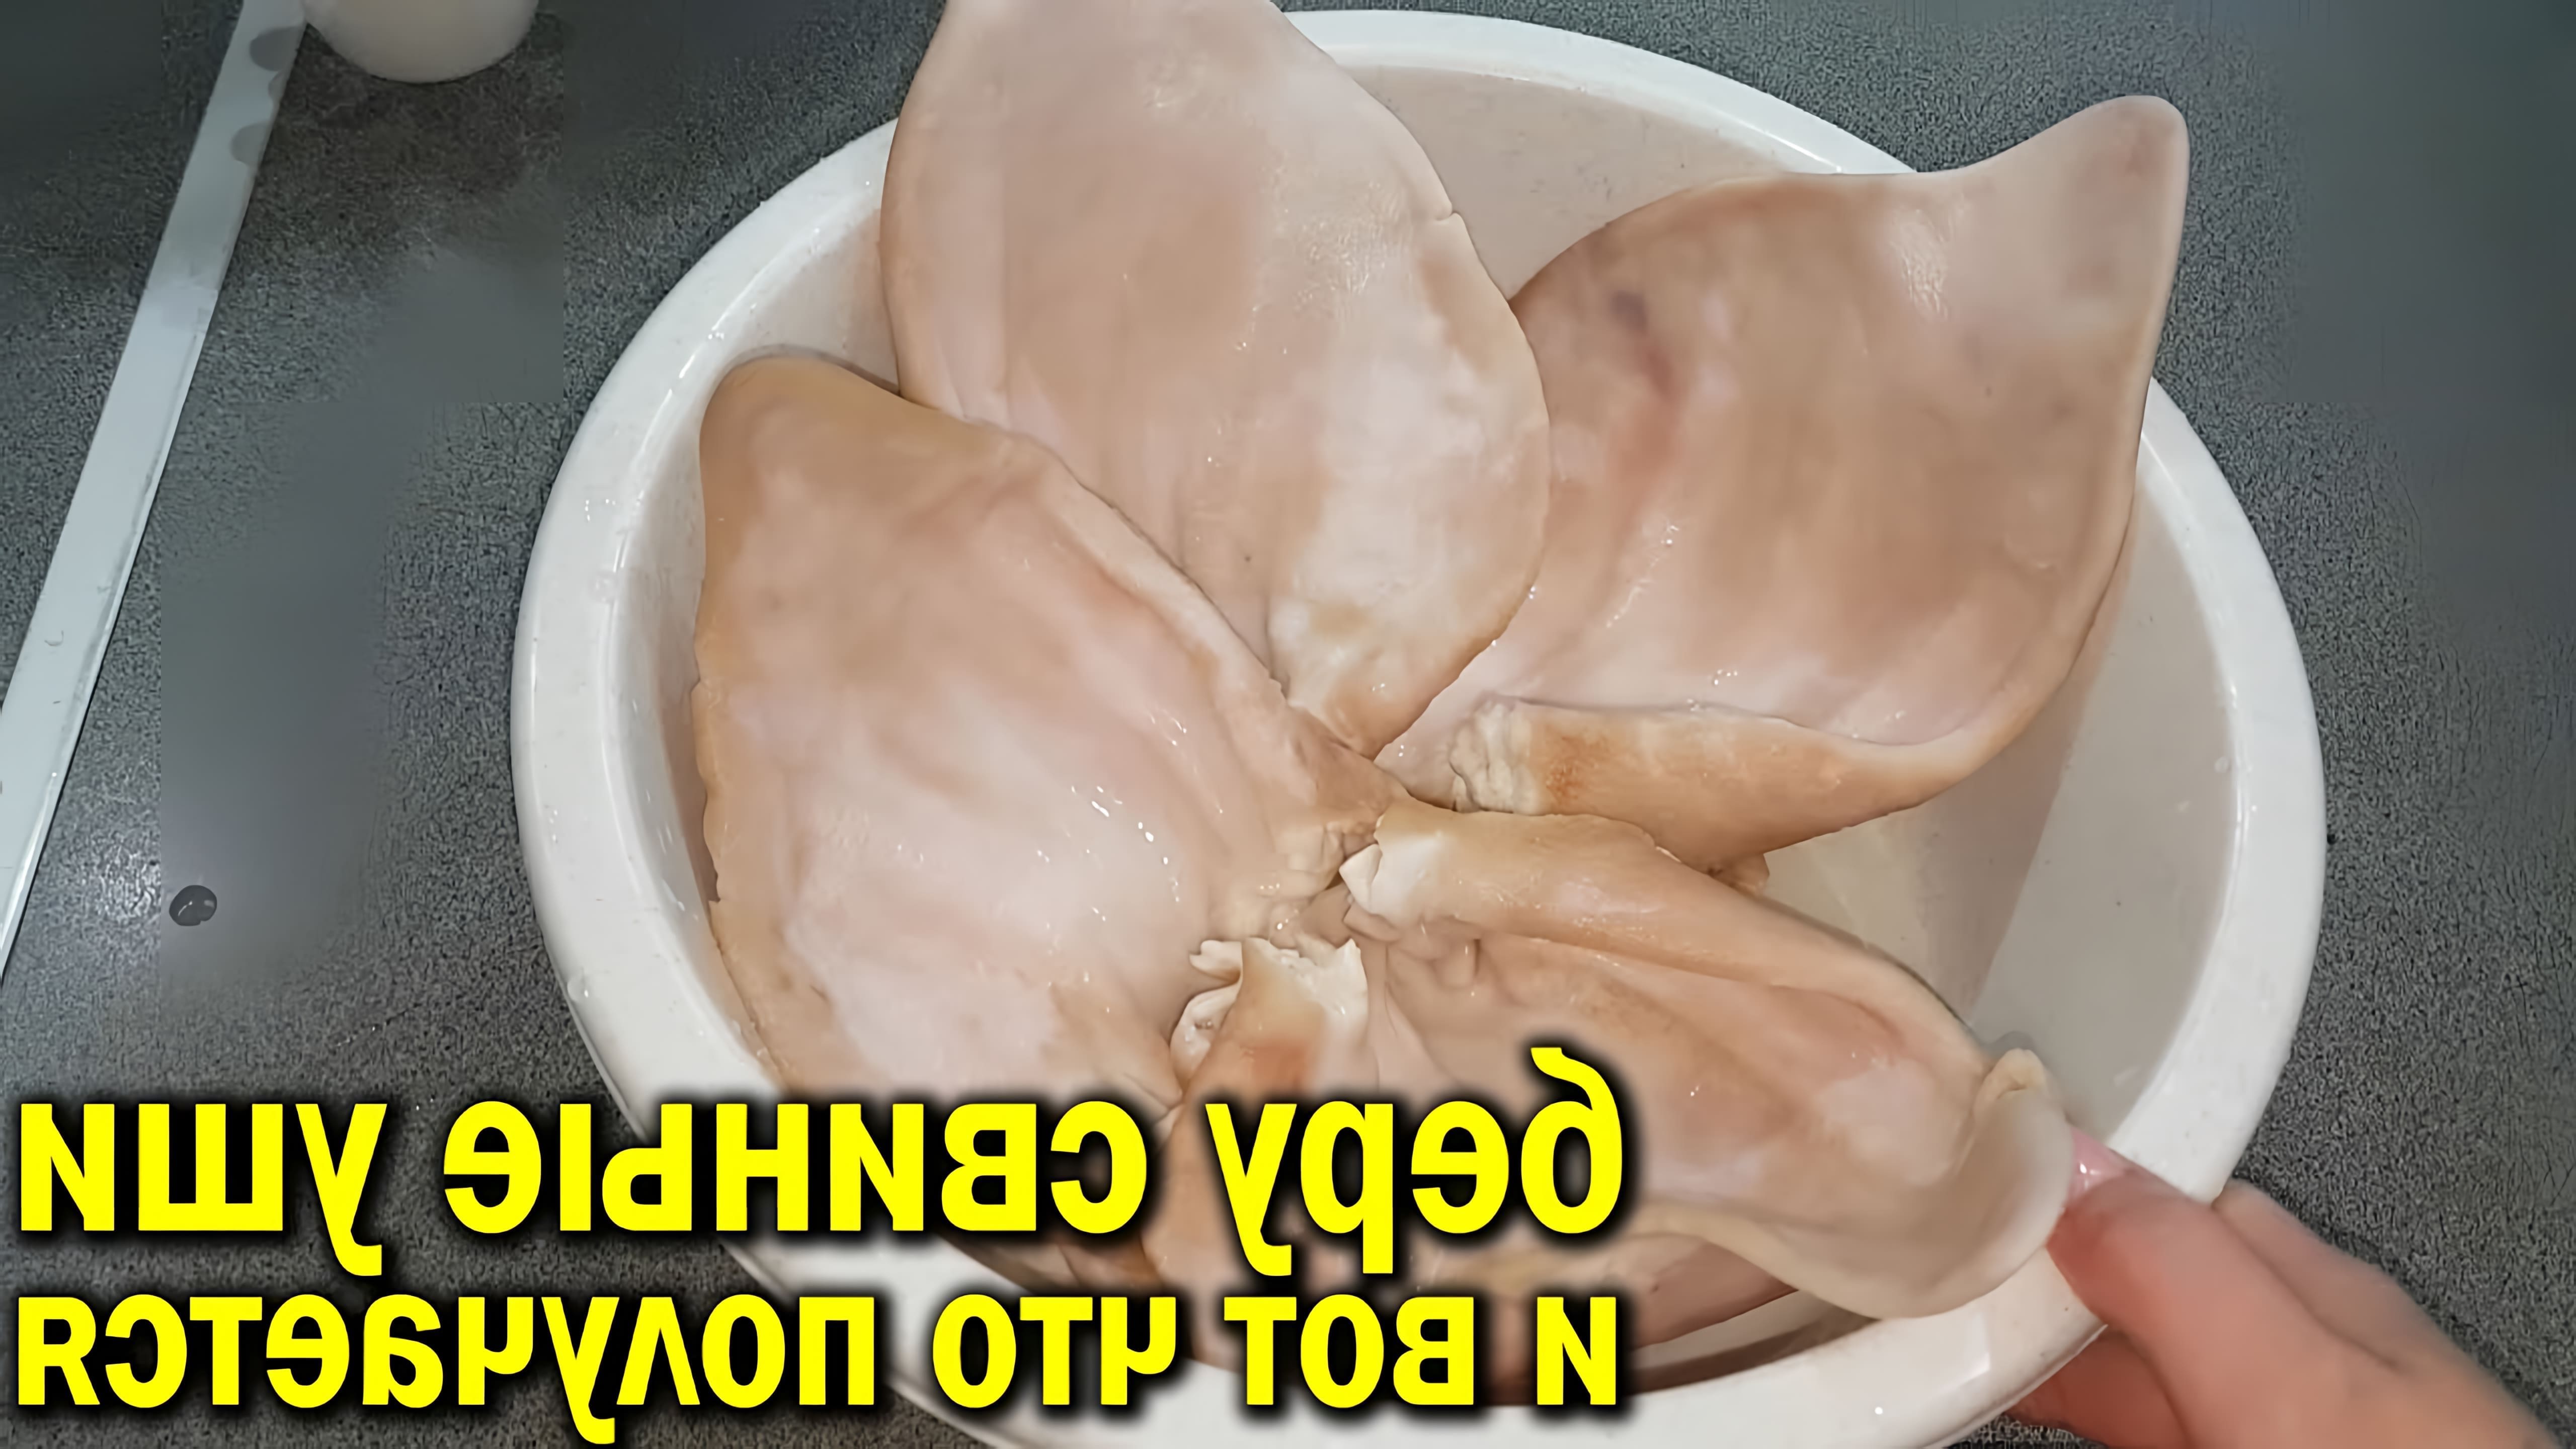 В этом видео демонстрируется процесс приготовления закуски из свиных ушей